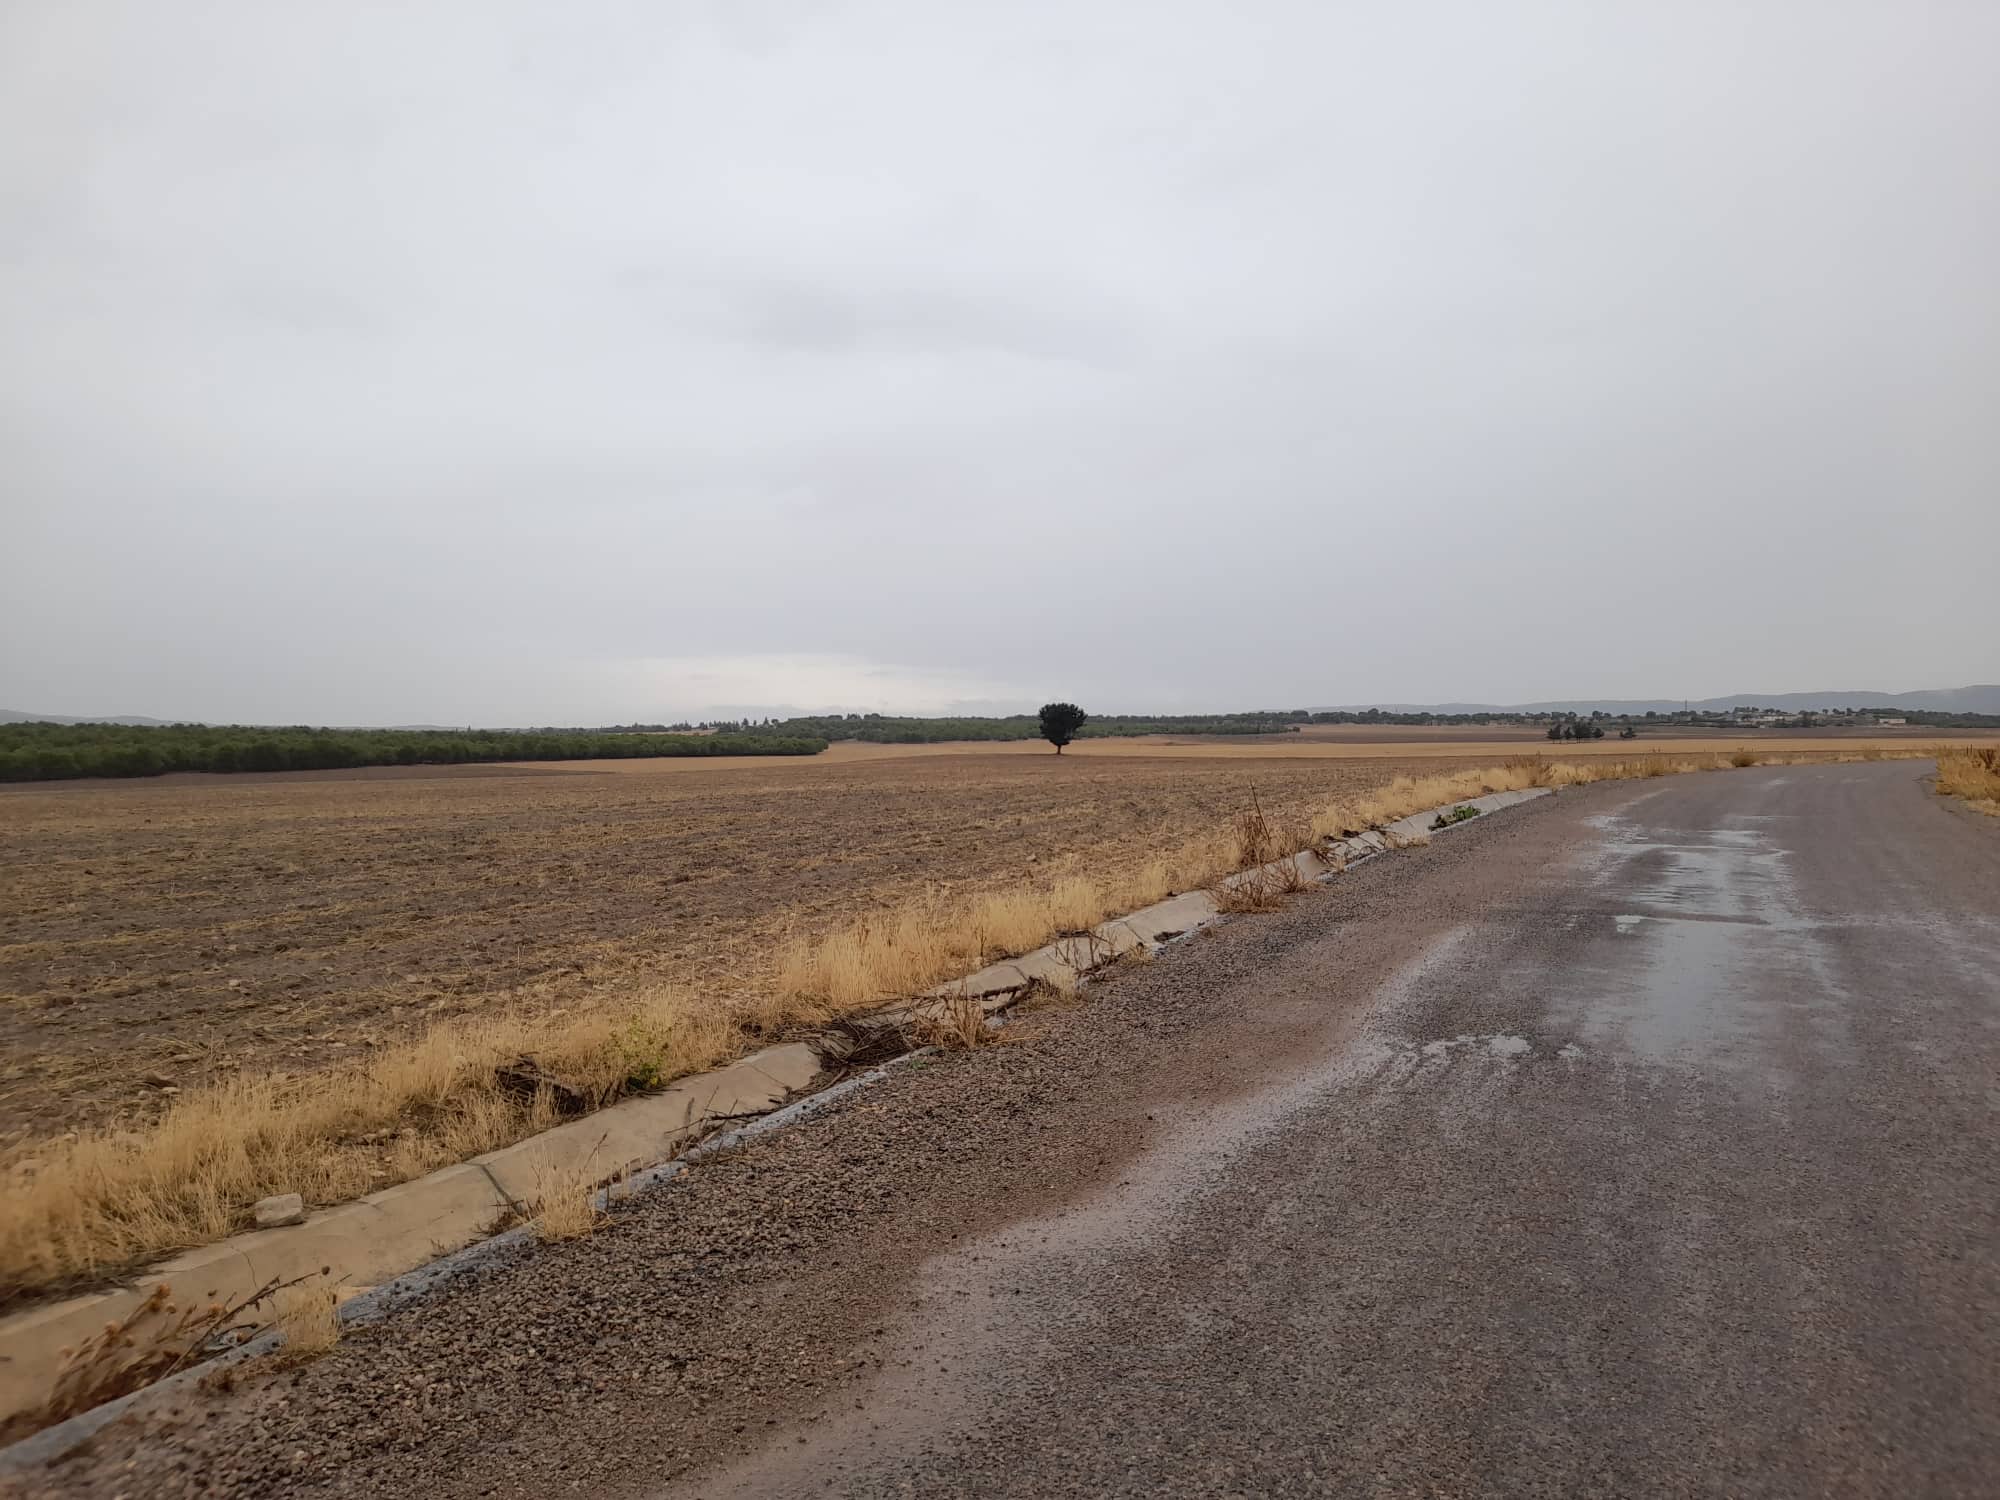 Le ministère des domaines de l’Etat récupère 4 terrains domaniaux agricoles de 63 hectares à Siliana